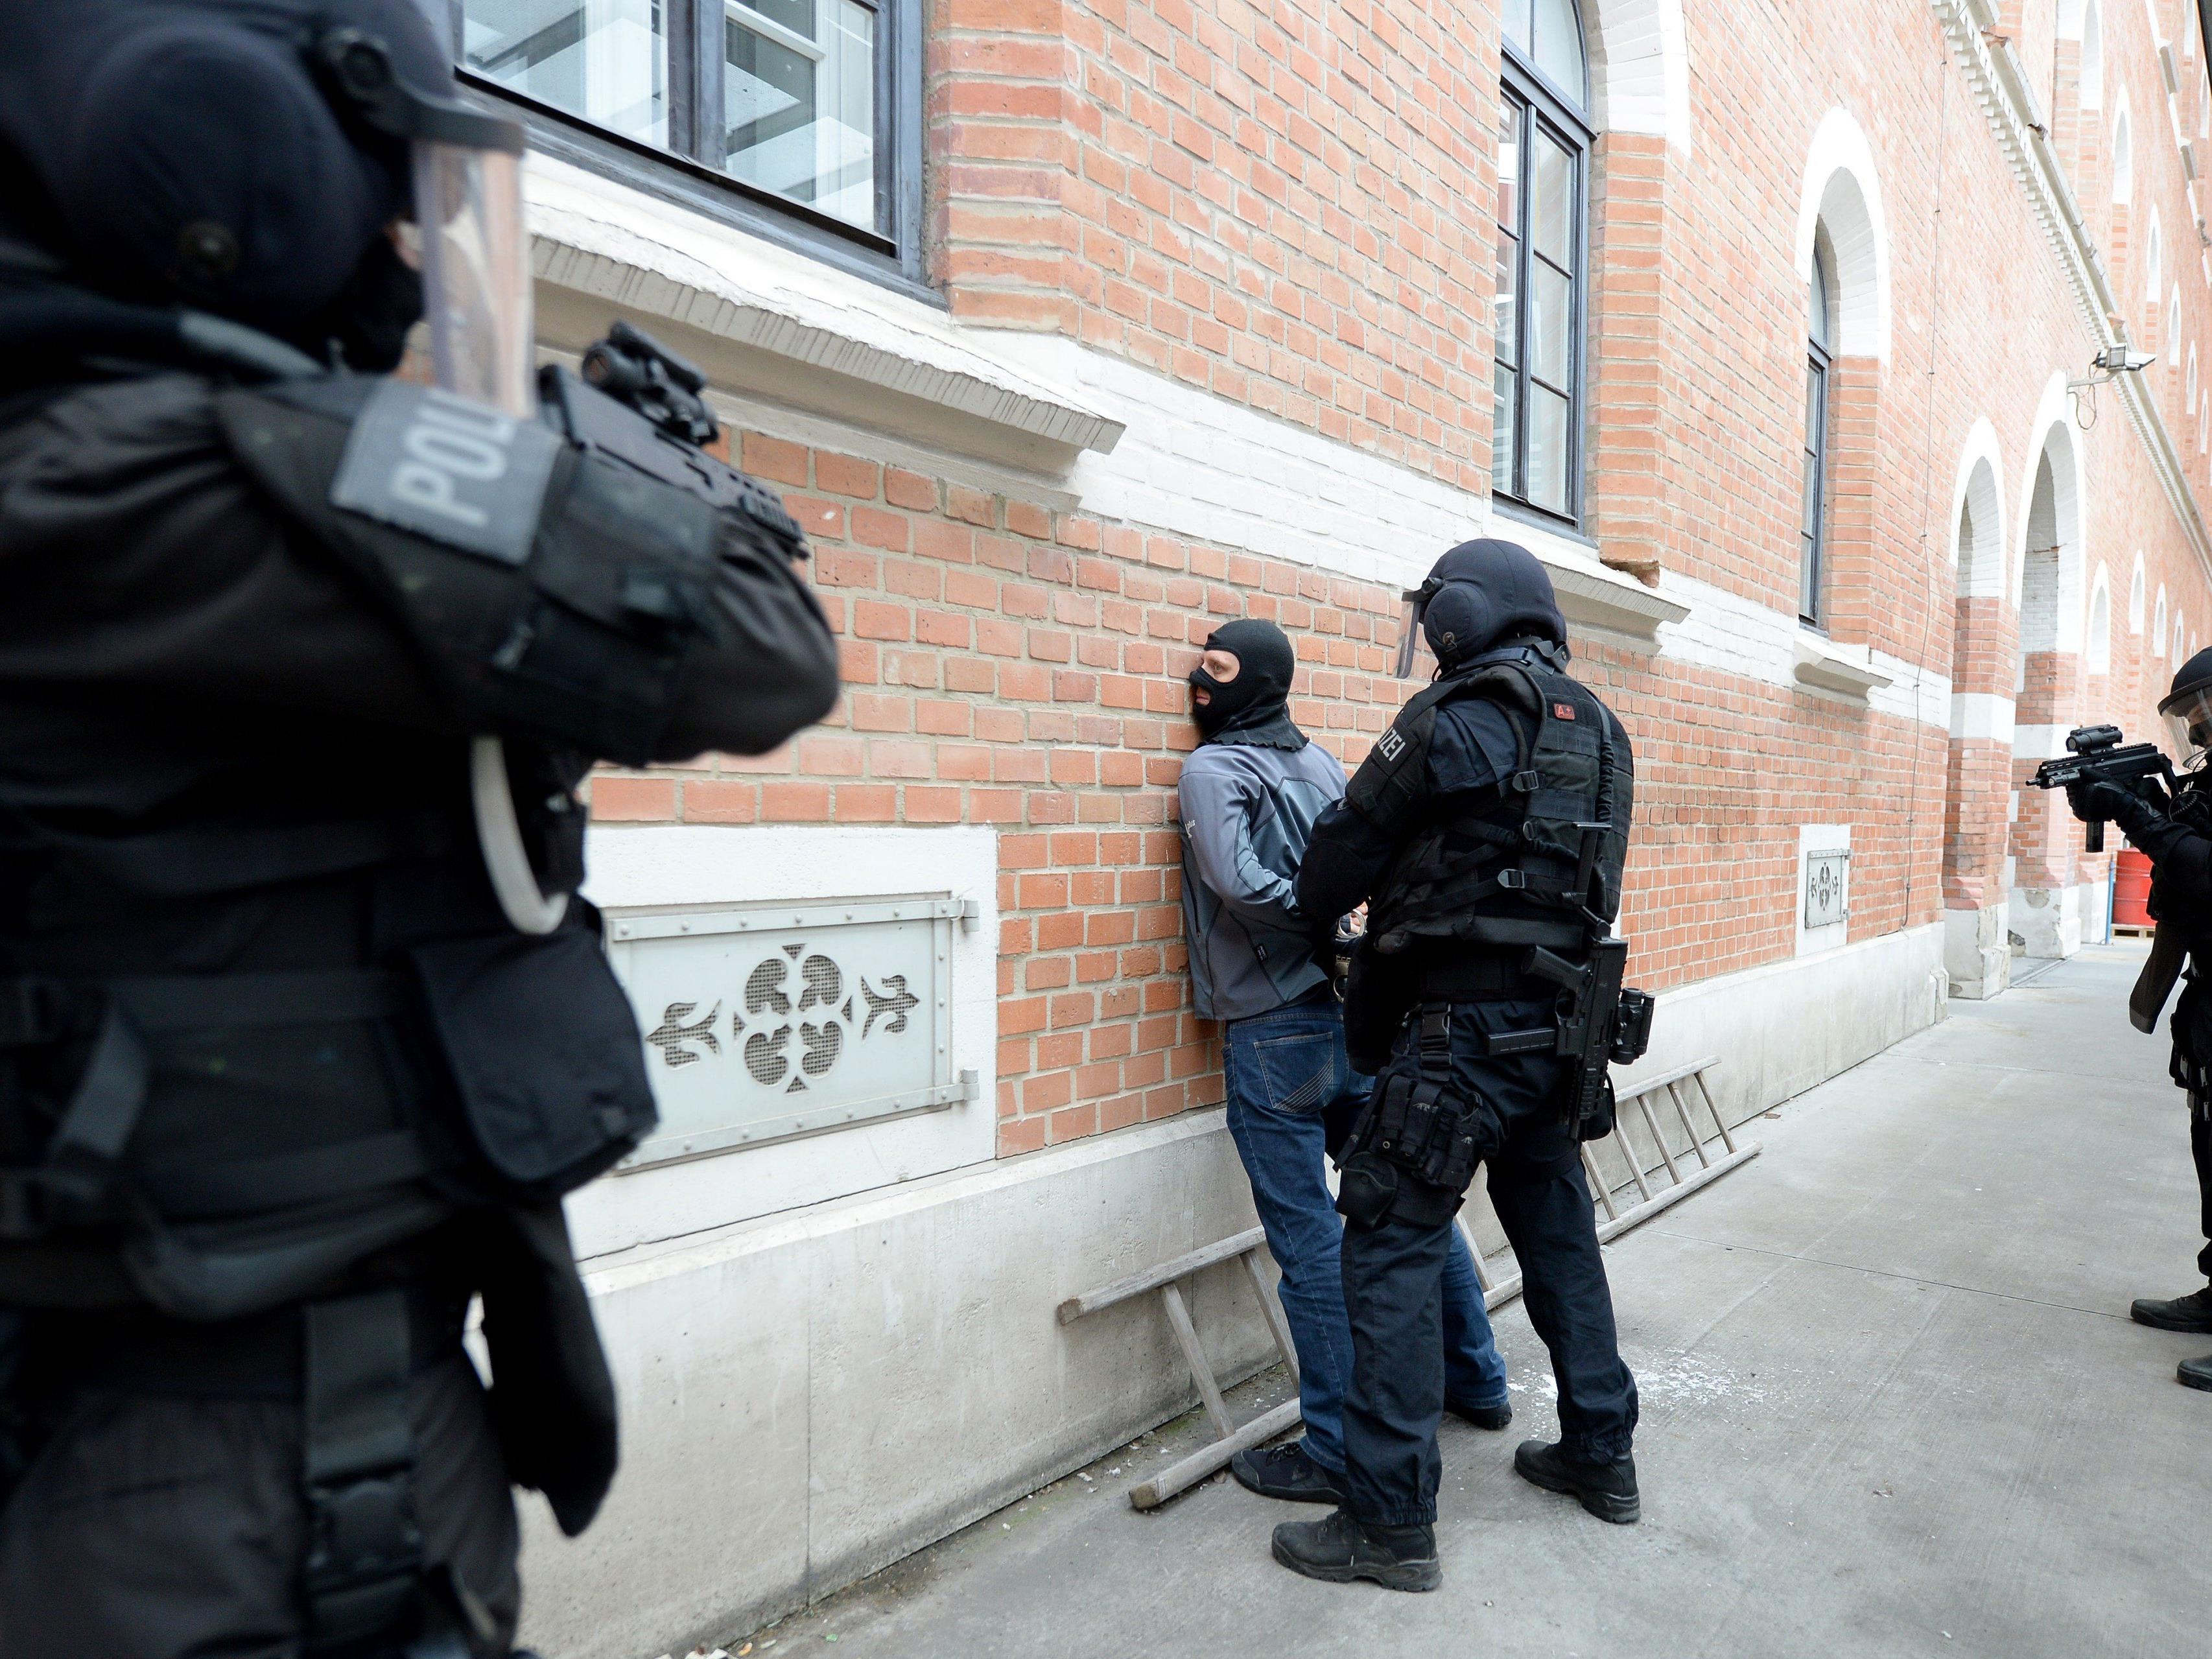 Polizisten der Sondereinheit "Einsatzkommando Cobra" werden bei der Groß-Einsatzübung dabei sein